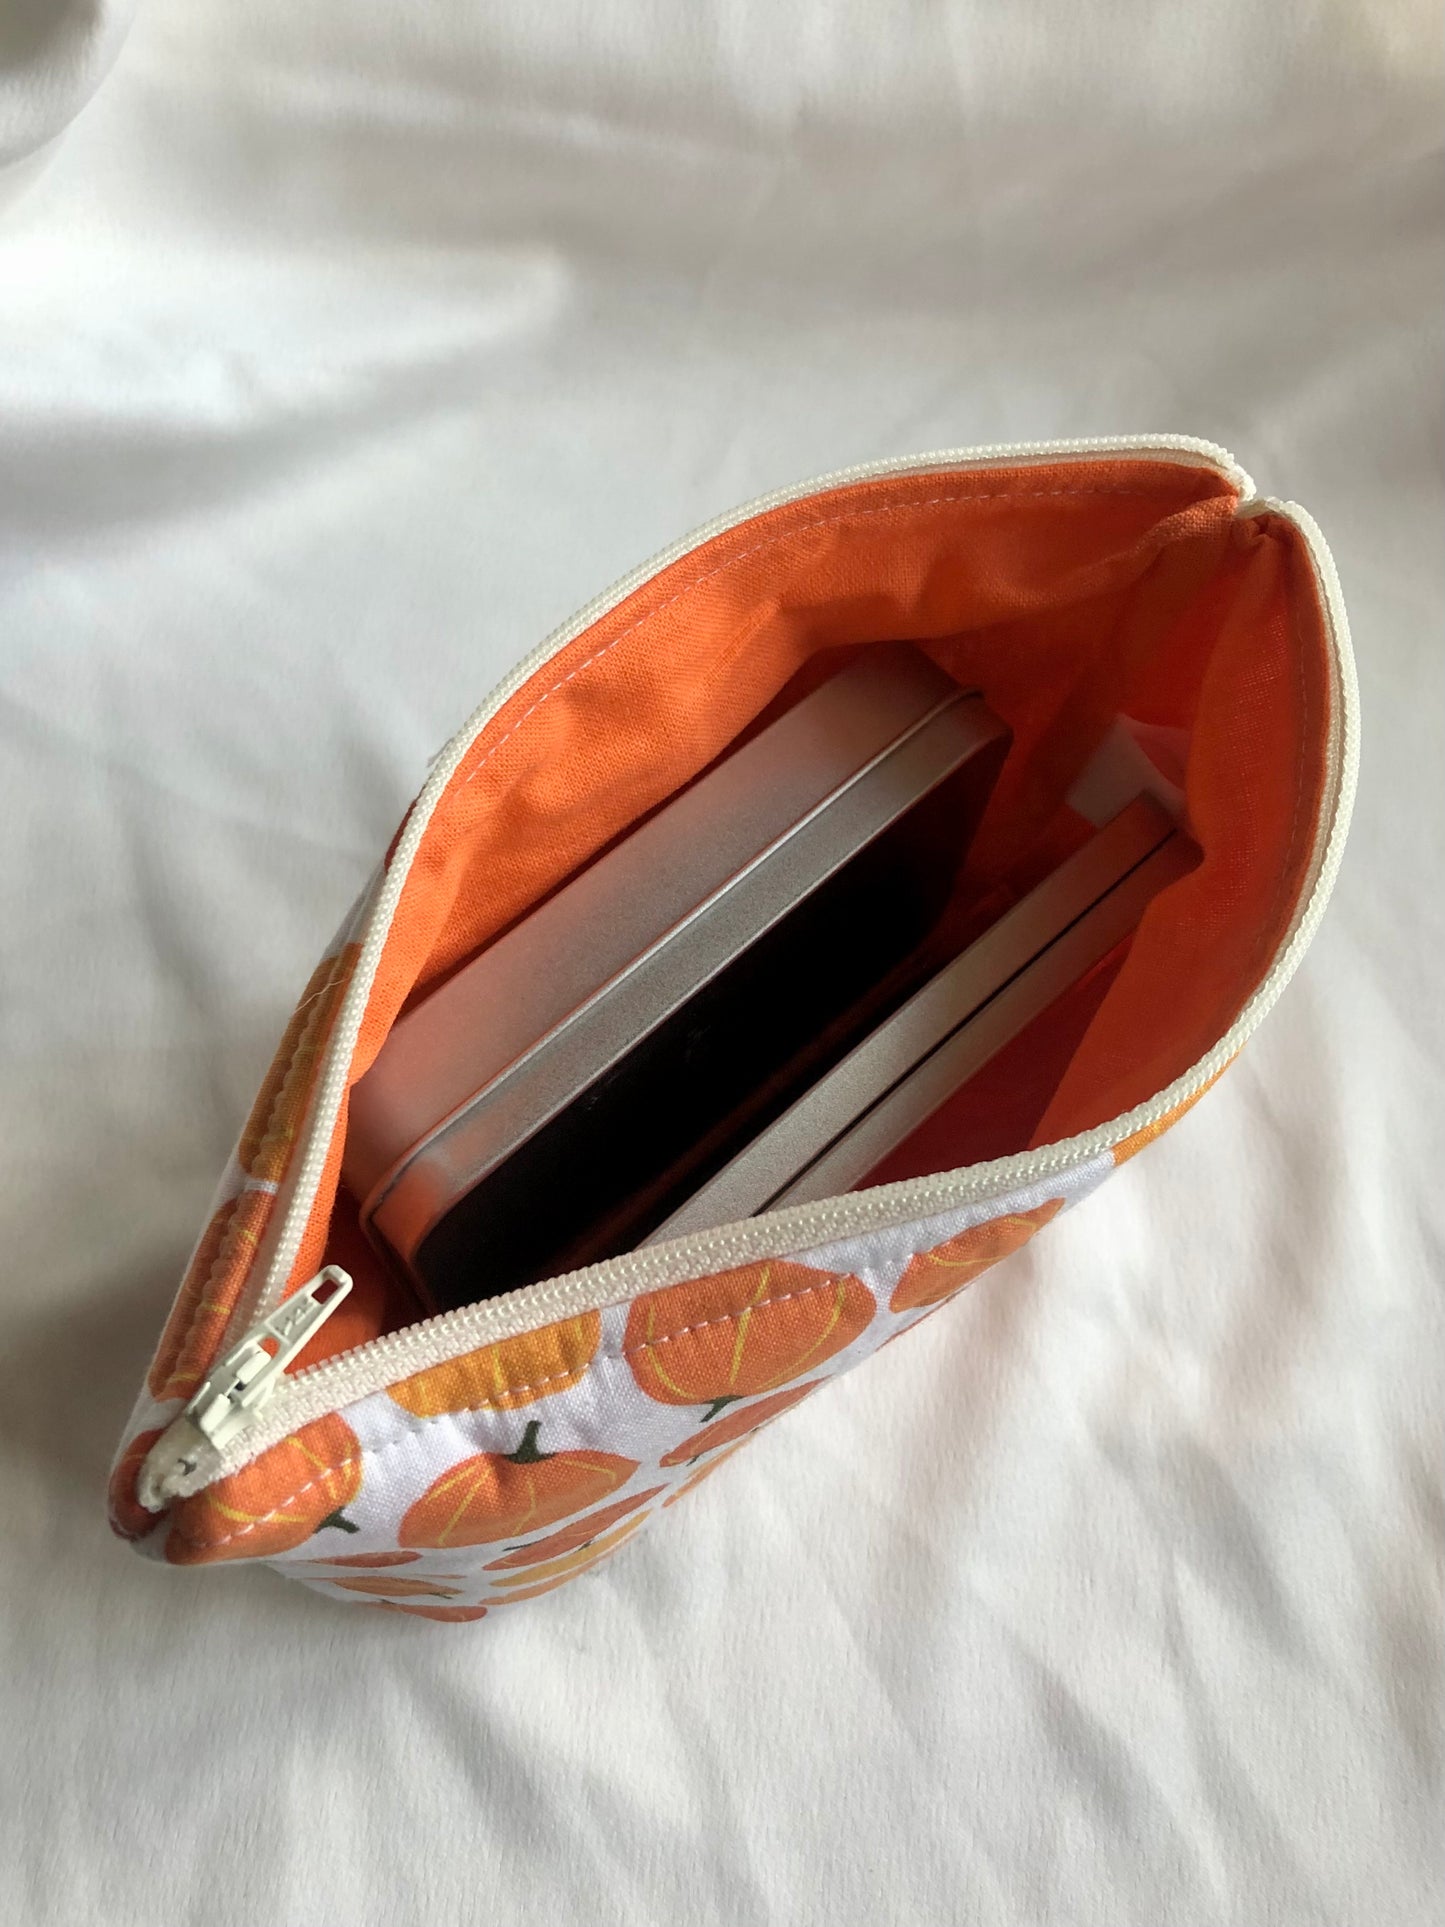 Pumpkin patch zipped pouch/make up bag